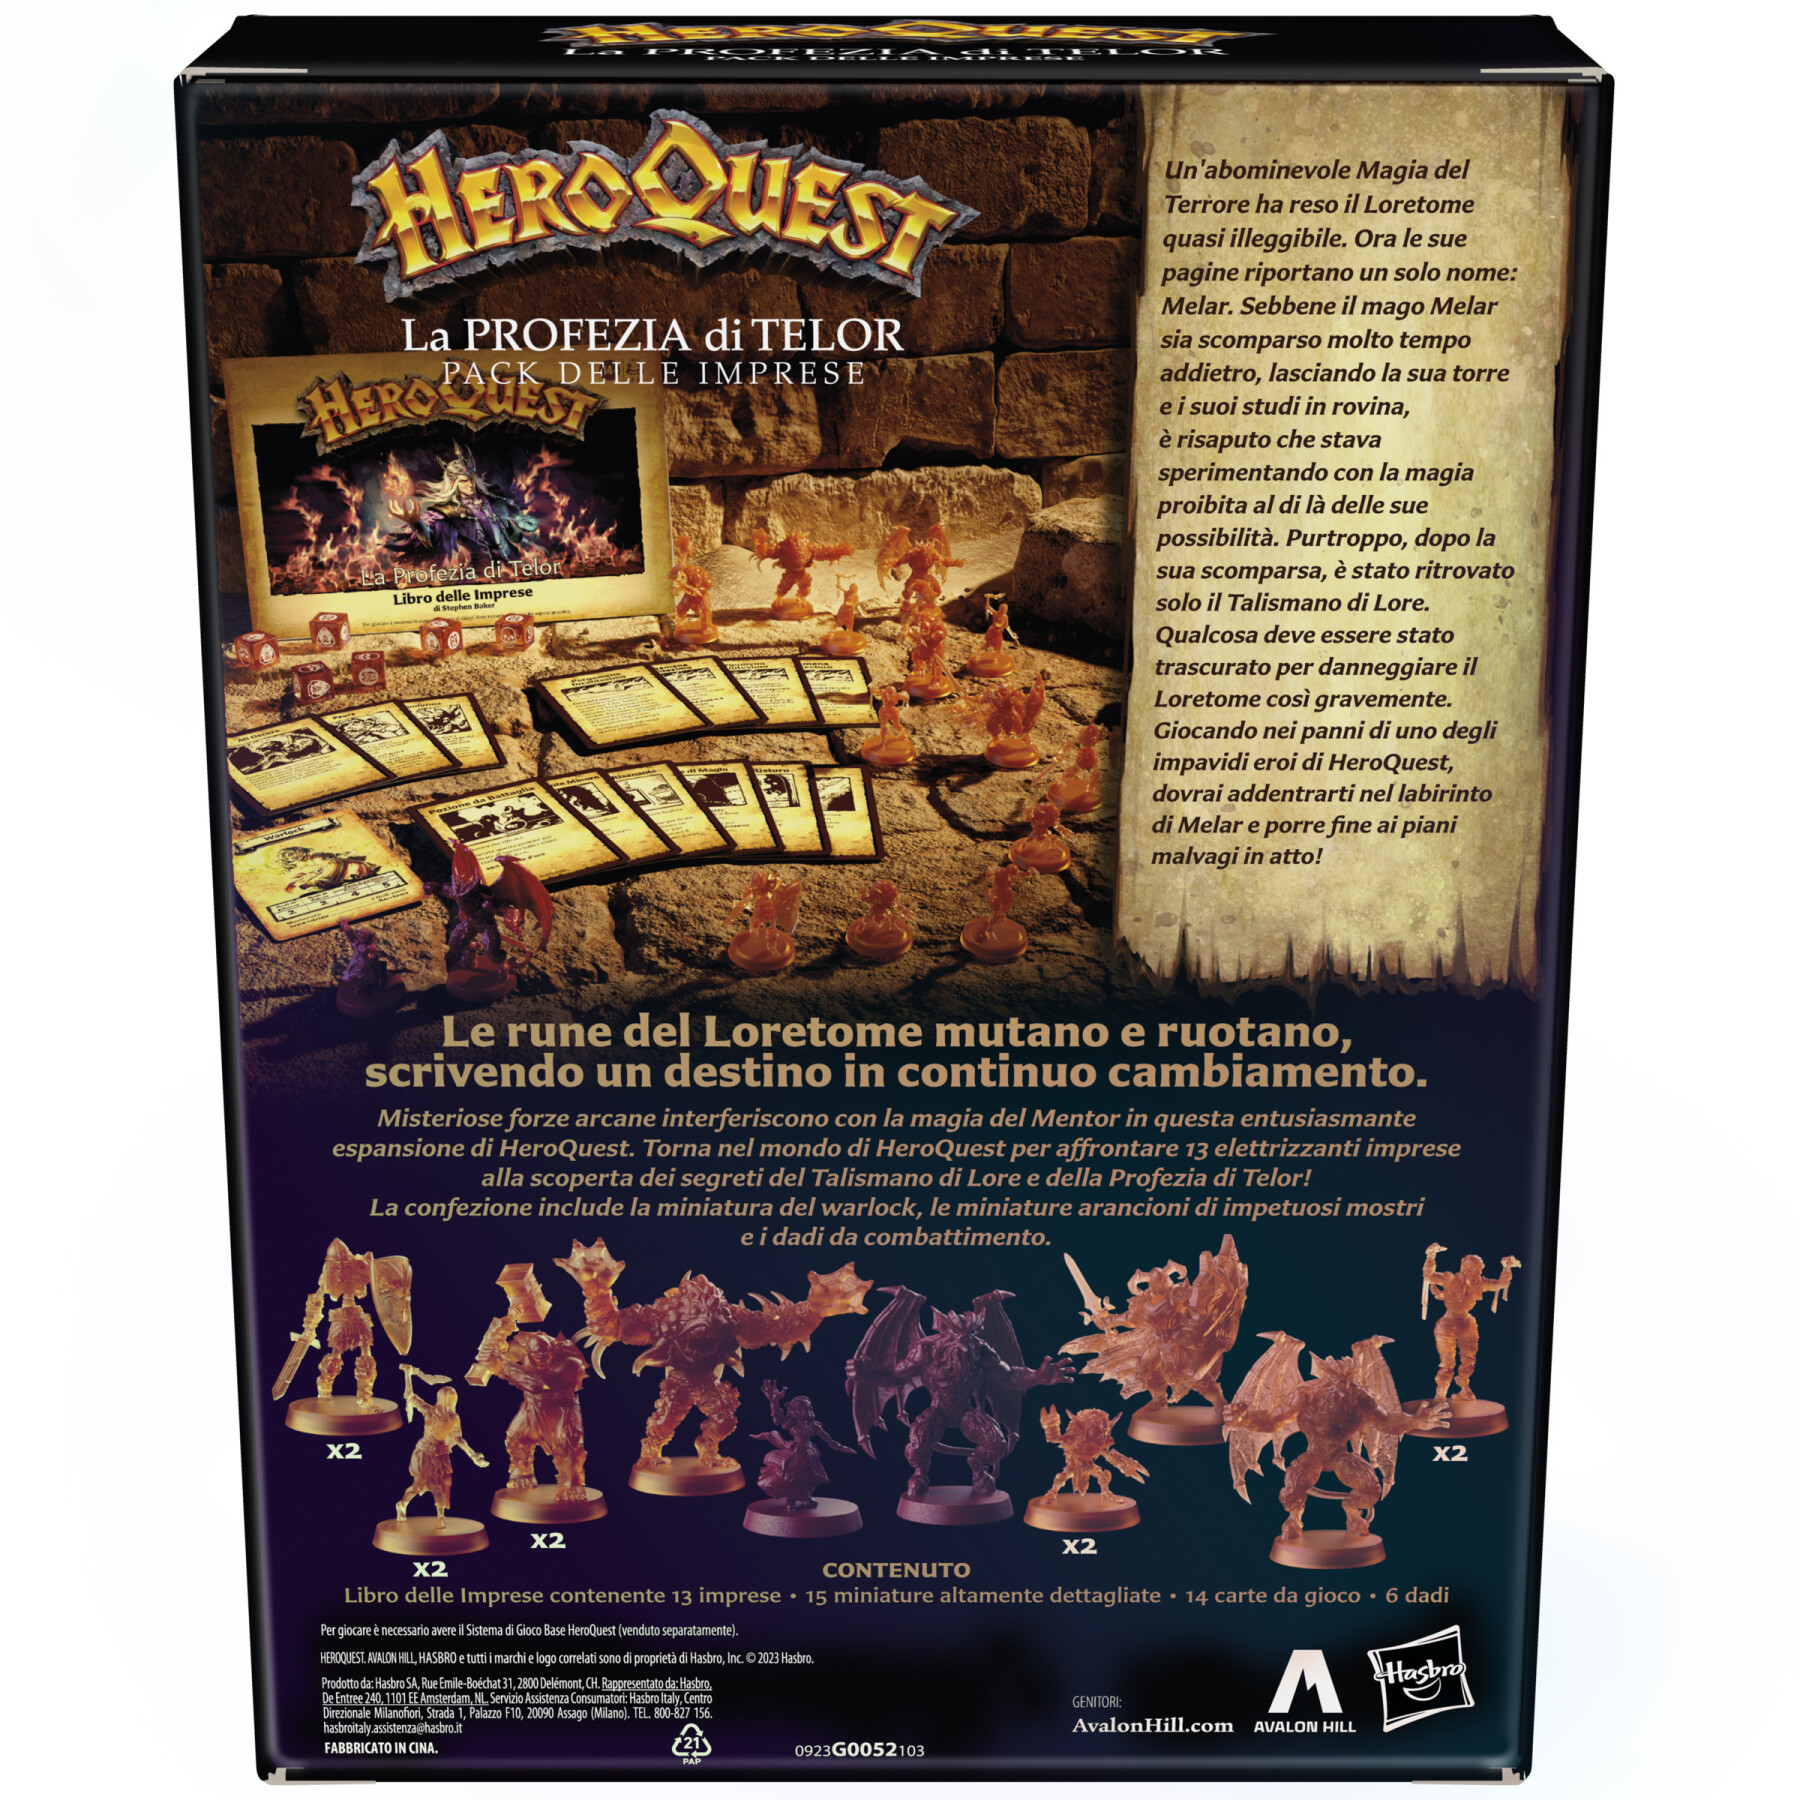 Avalon hill, heroquest, la profezia di telor, pack delle imprese, richiede il sistema di gioco base heroquest per poter giocare - 